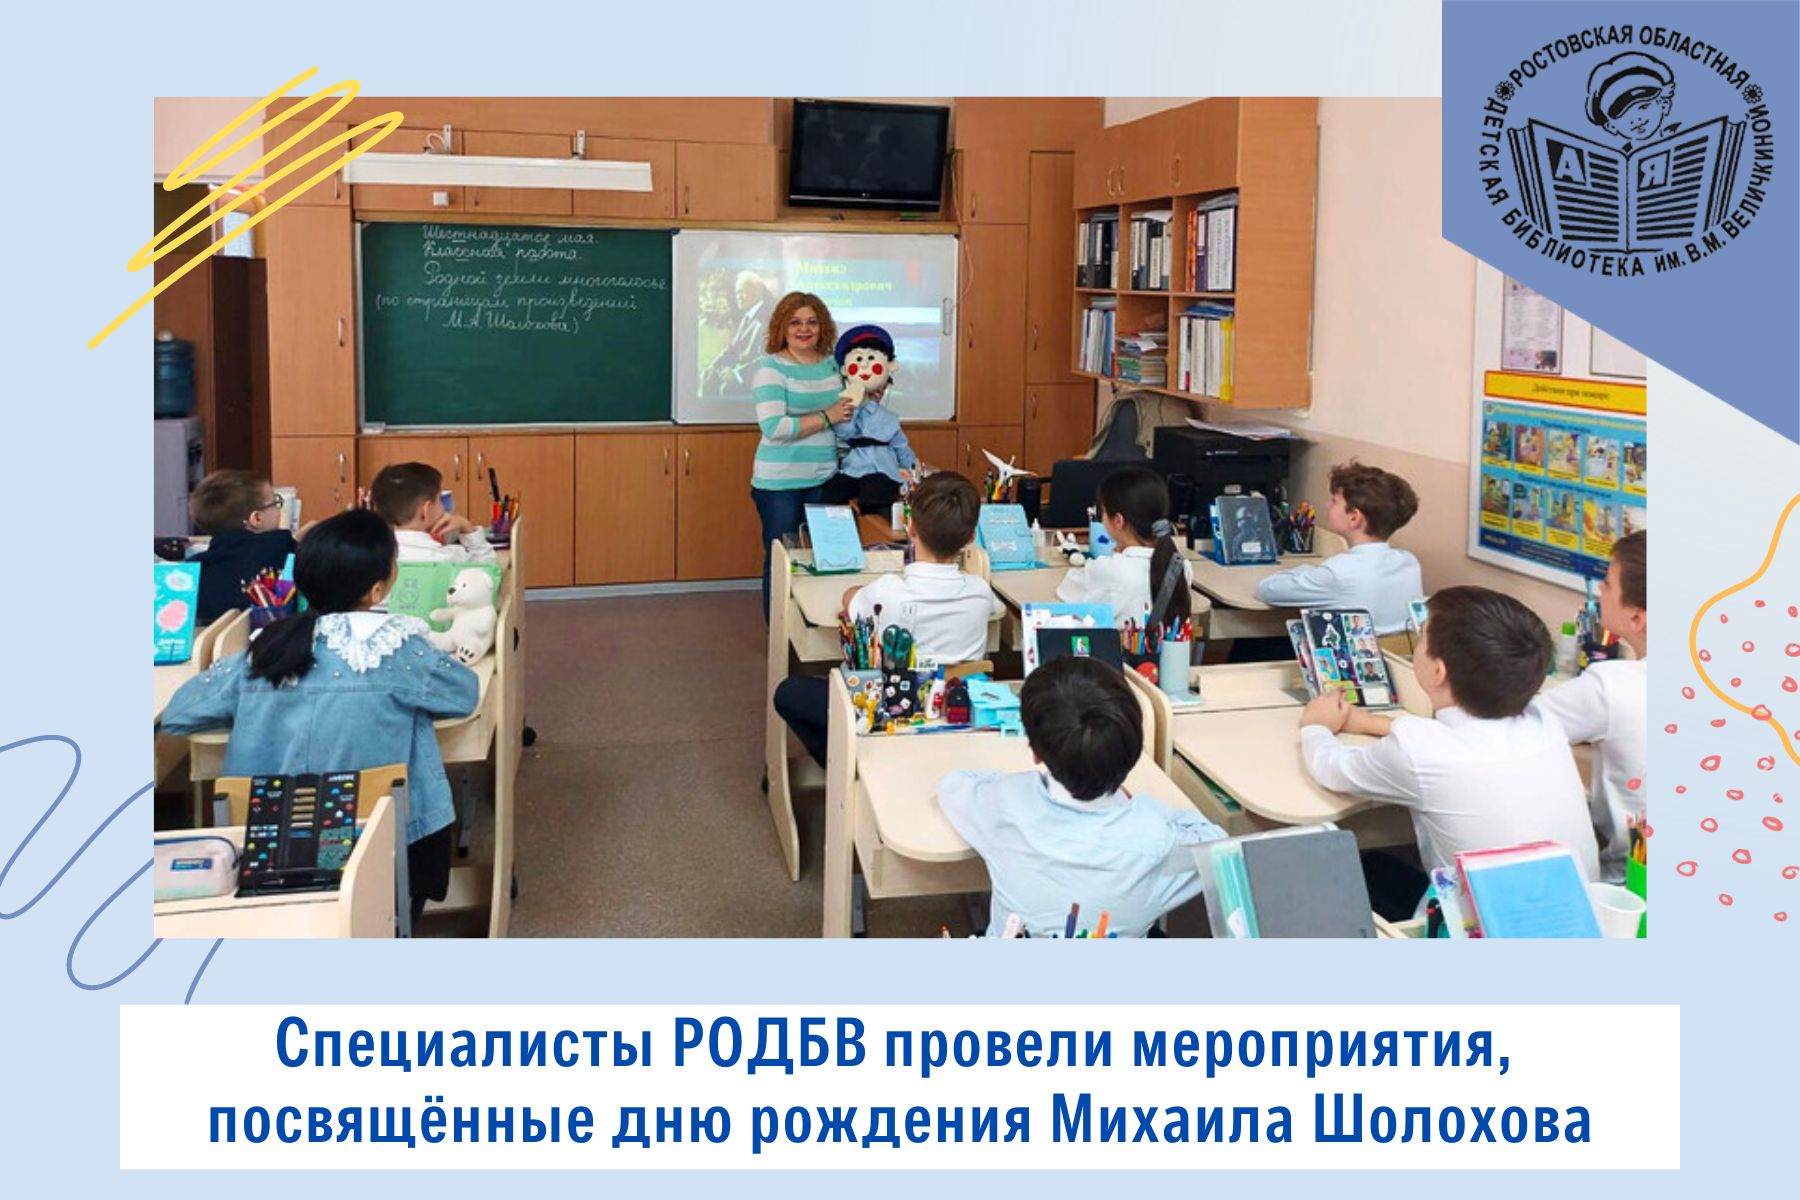 Специалисты Ростовской областной детской библиотеки имени В.М. Величкиной провели мероприятия, посвящённые дню рождения Михаила Шолохова